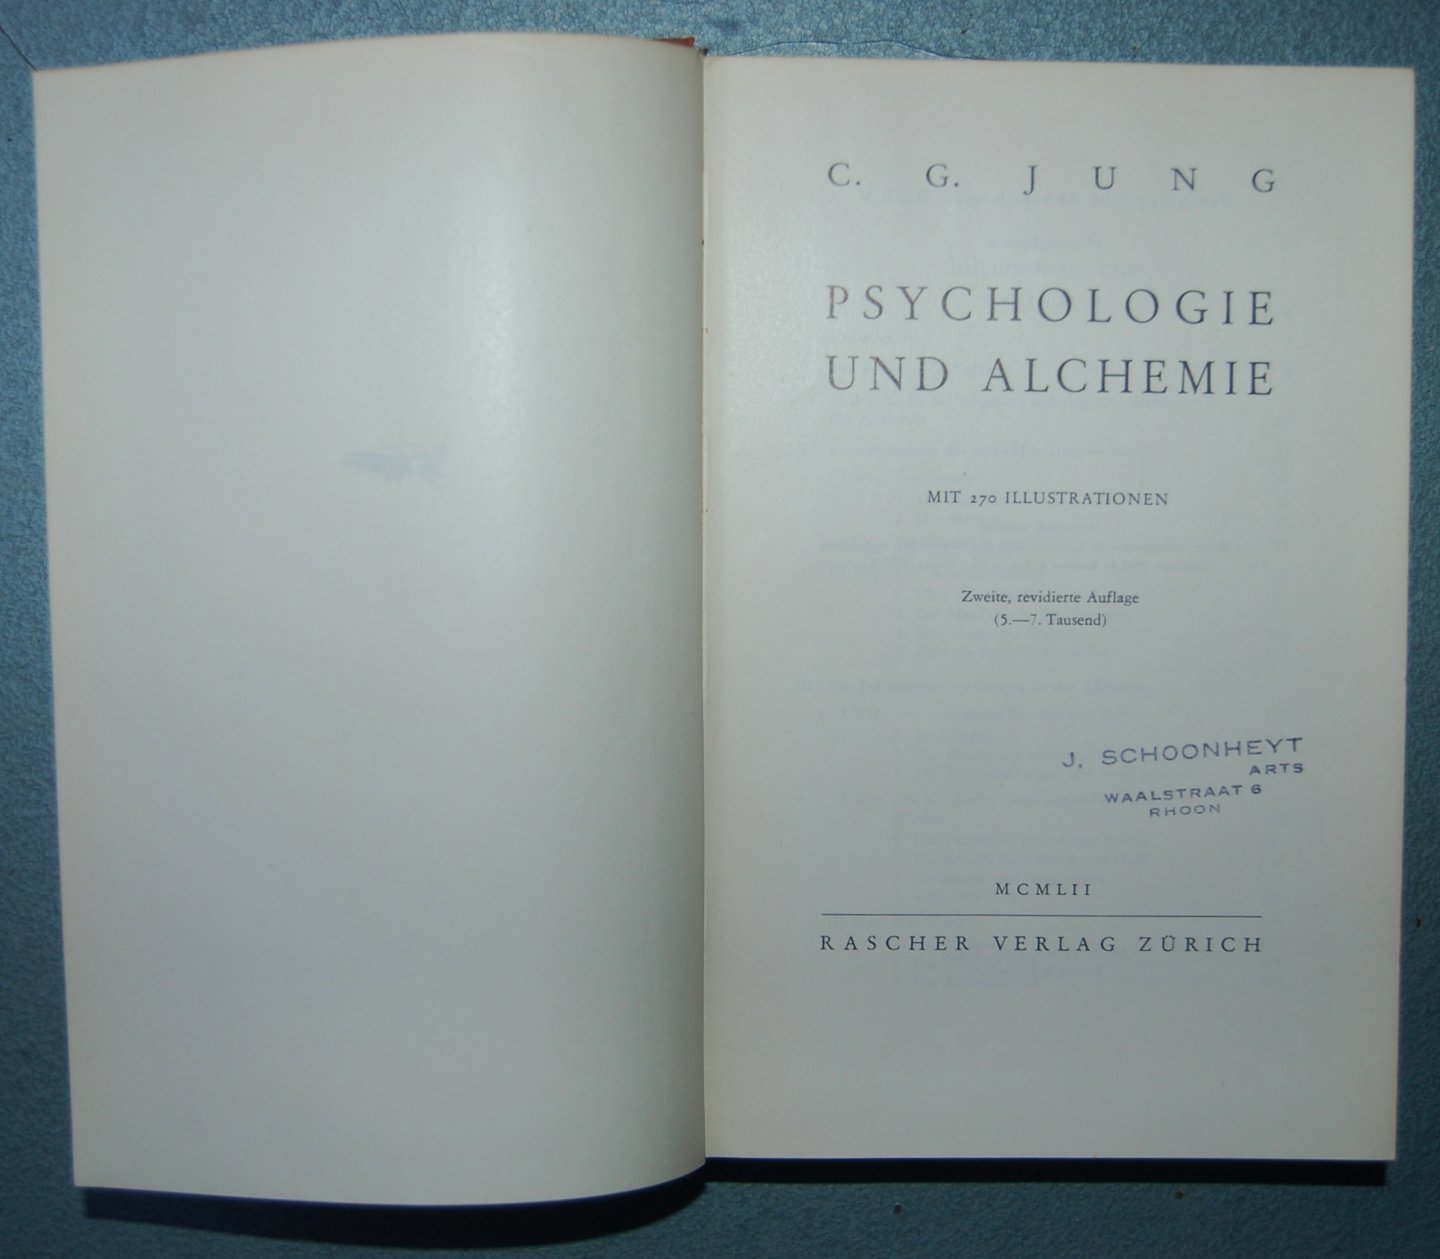 Jung, C. G. - Psychologie und Alchemie